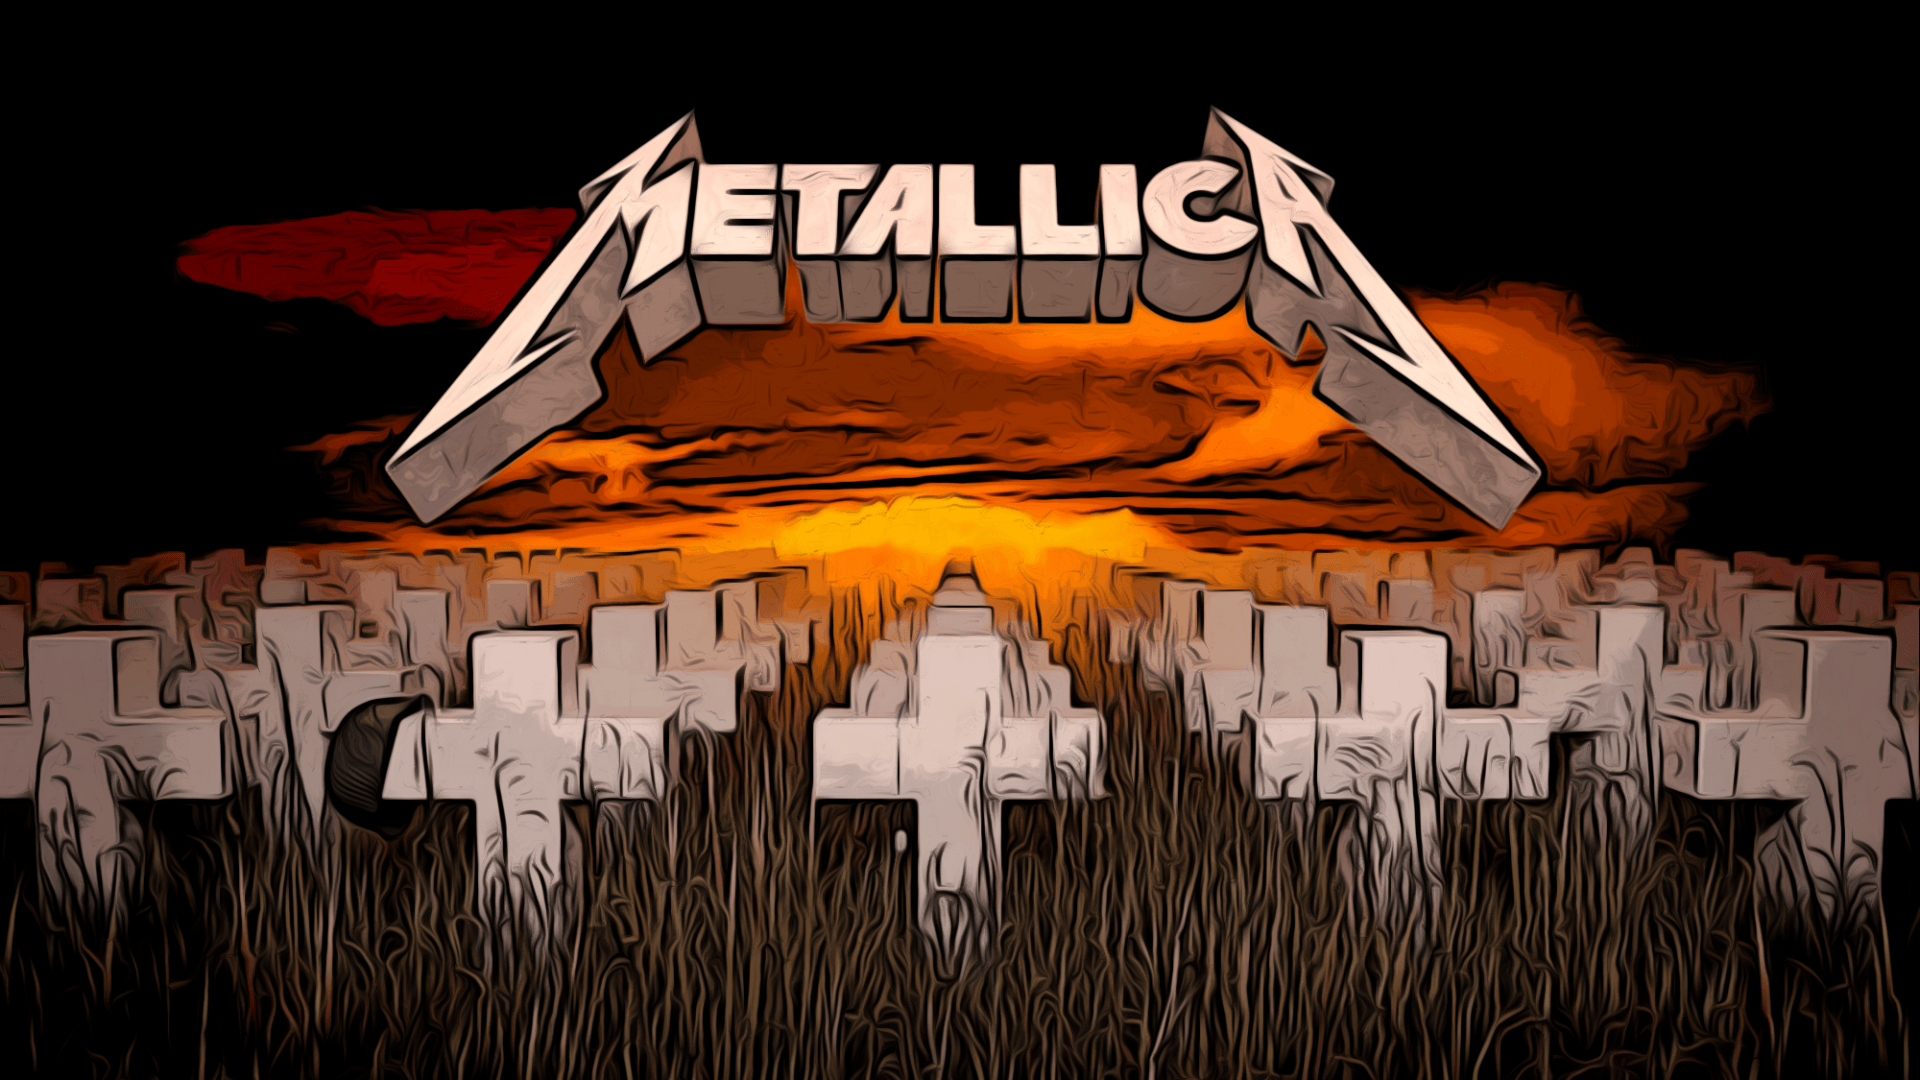 Chất lượng hình ảnh tỉ lệ chuẩn HD với chủ đề Metallica đã sẵn sàng để bạn tải về và sử dụng. Thành quả sau mỗi giờ hoàn thành công việc sẽ càng trở nên ý nghĩa và năng động hơn với những hình nền đẹp mắt này. 